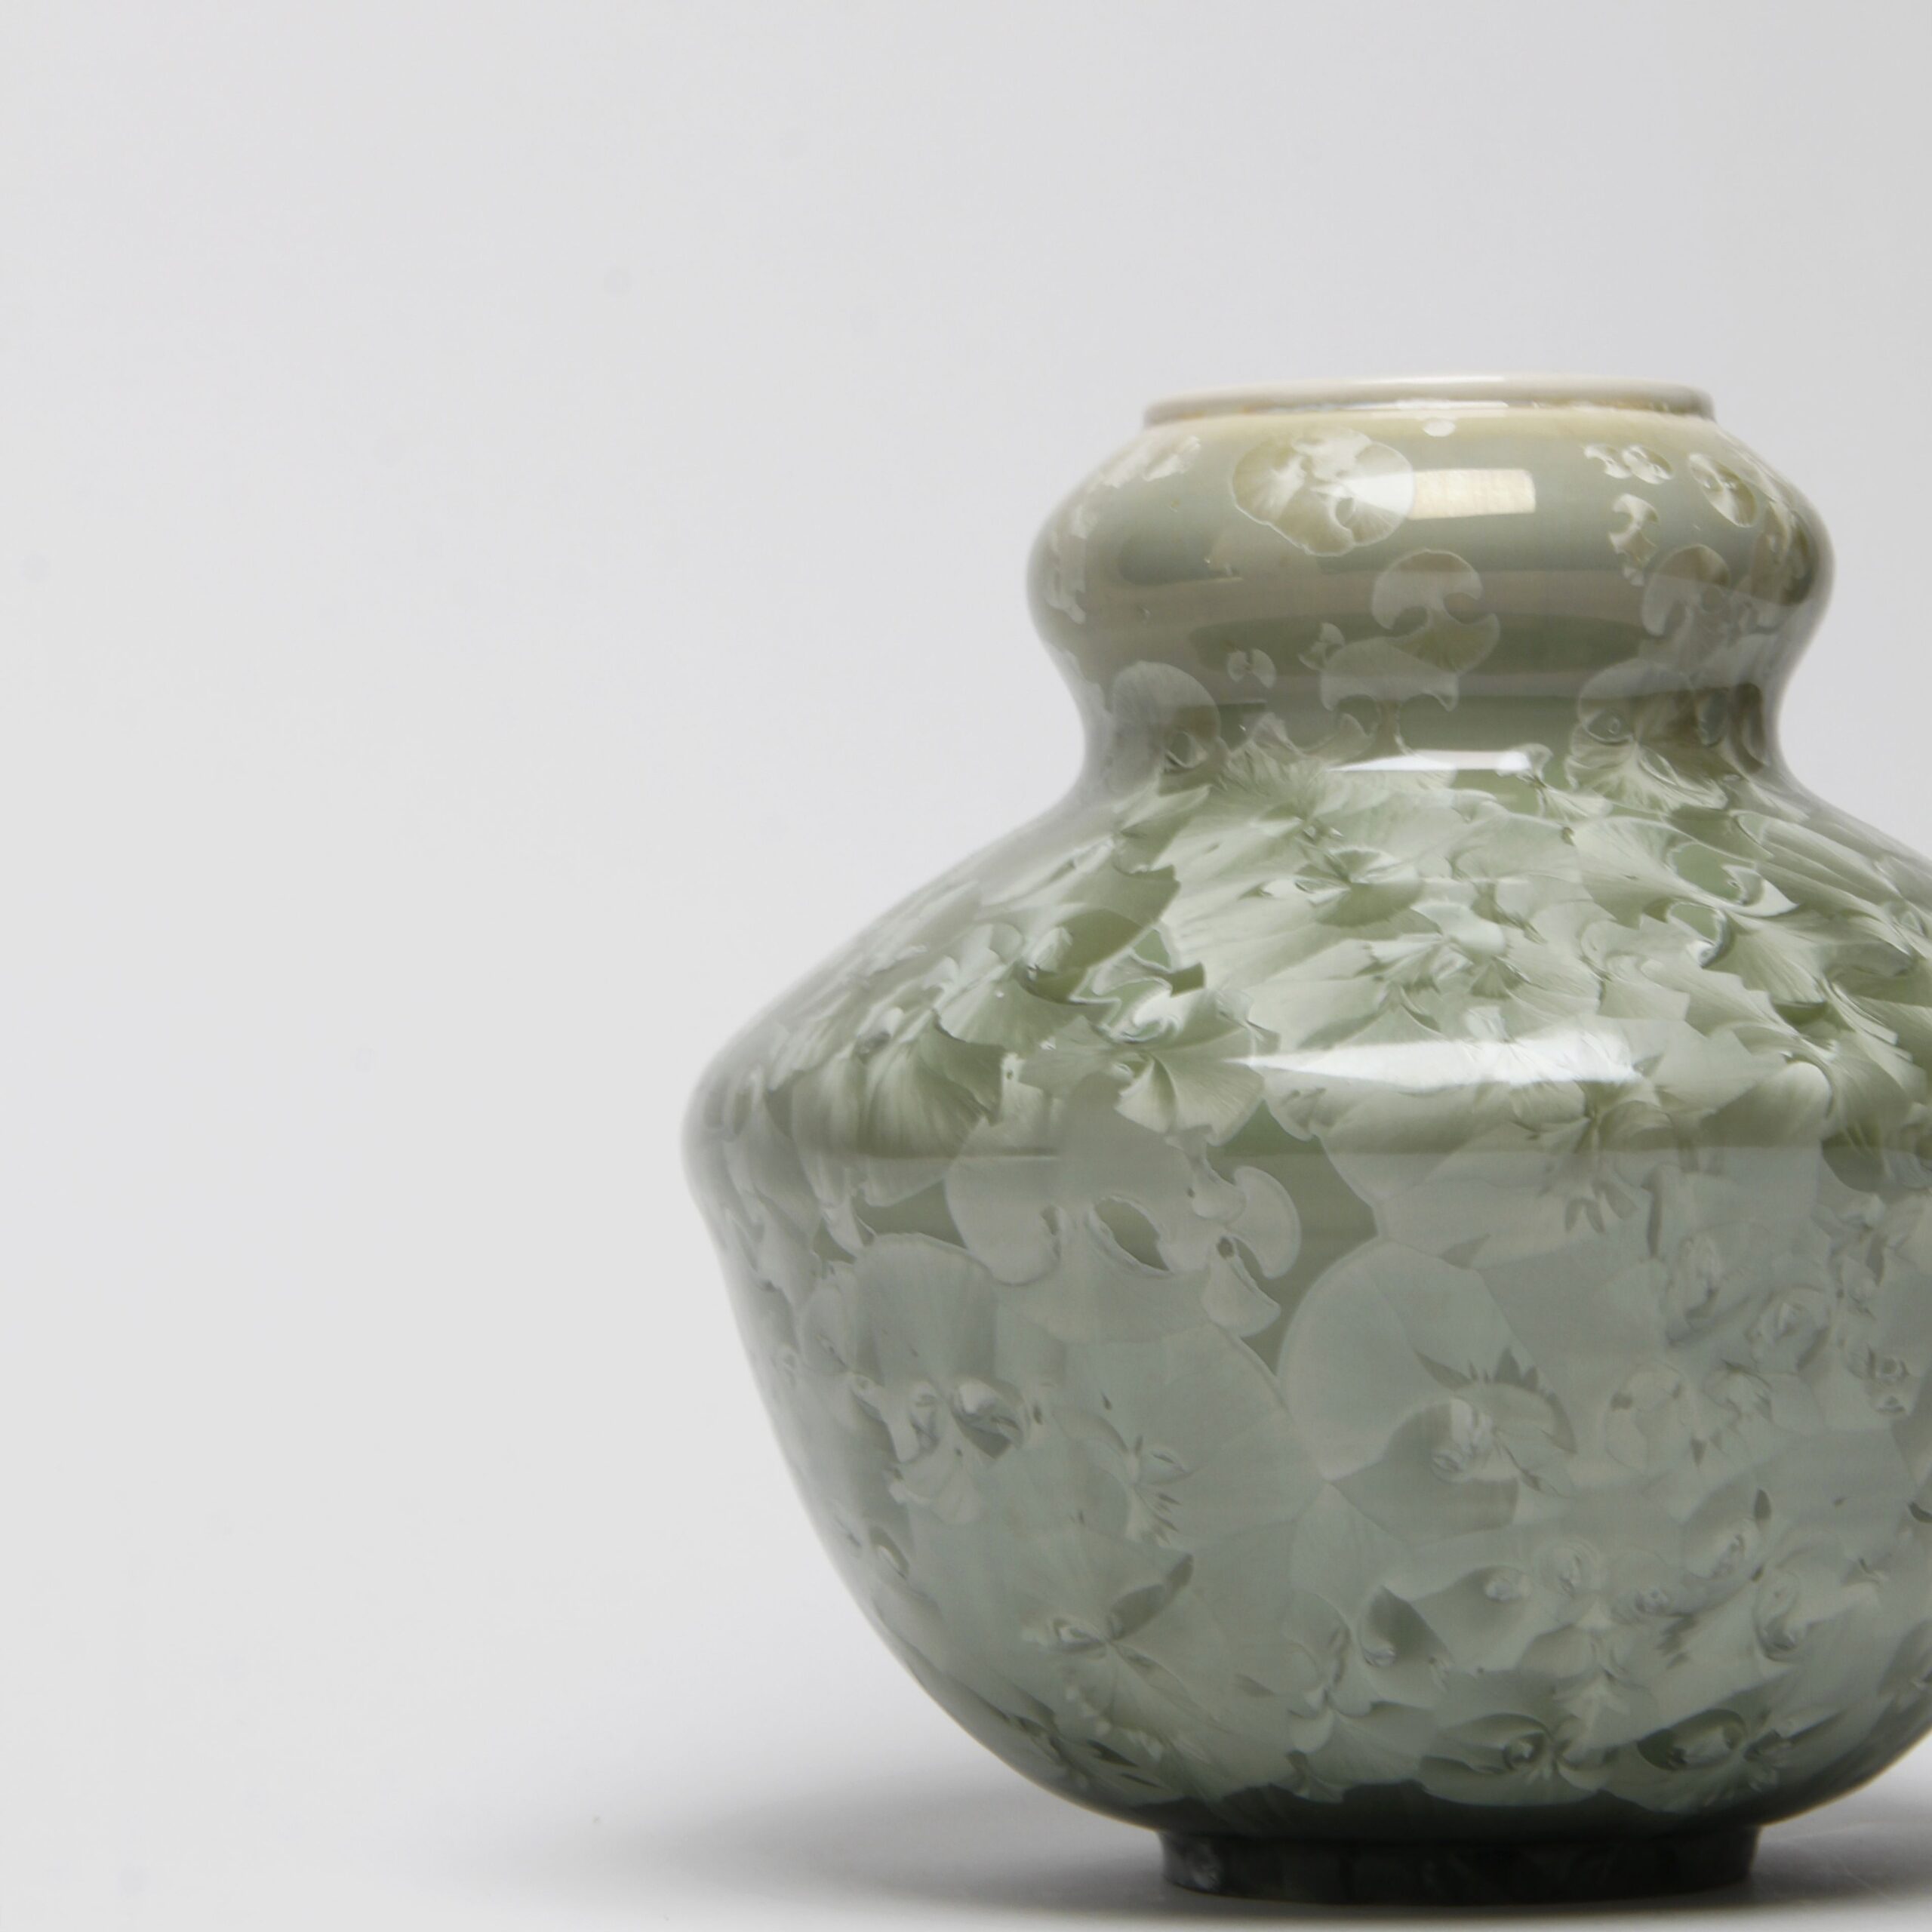 Yumiko Katsuya: Gold on Green Vase Product Image 2 of 4